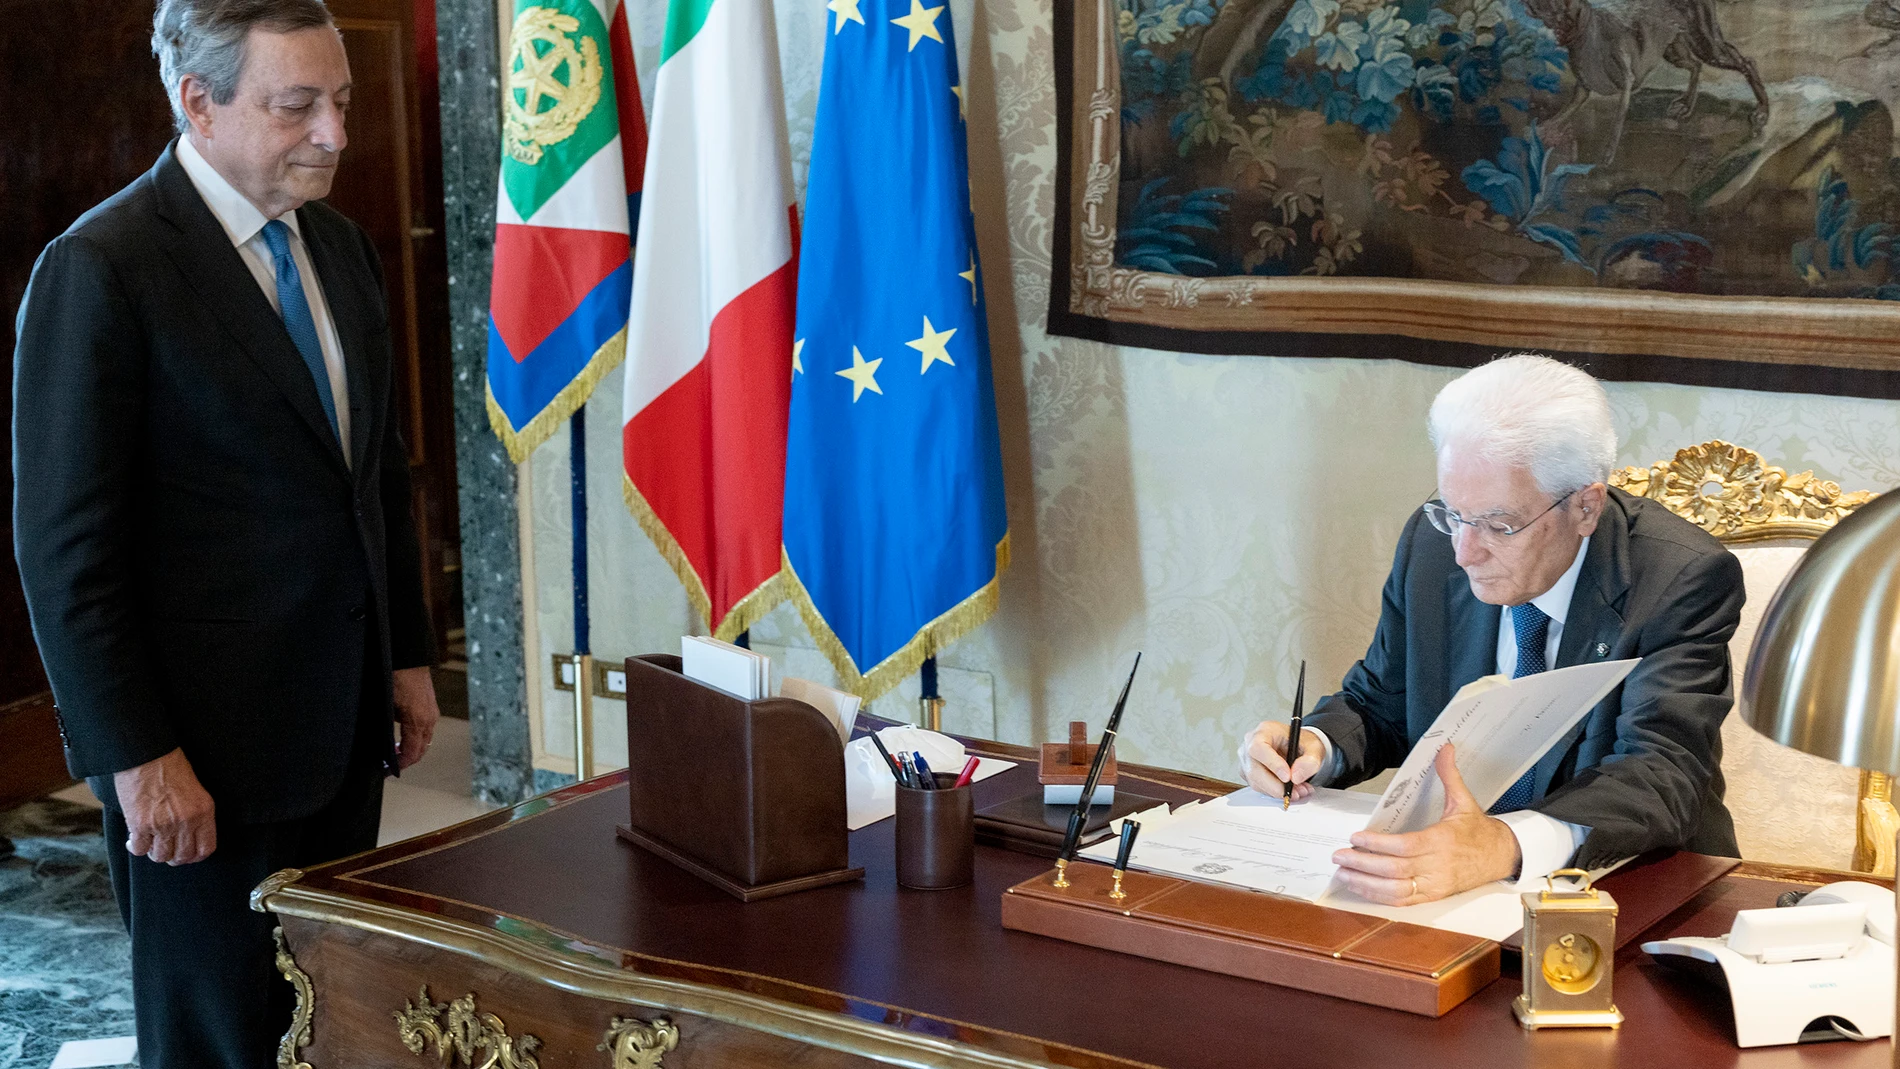 El presidente italiano Sergio Mattarella (derecha) firma la disolución del Parlamento frente a la dimisión del primer ministro italiano, Mario Draghi (izquierda)